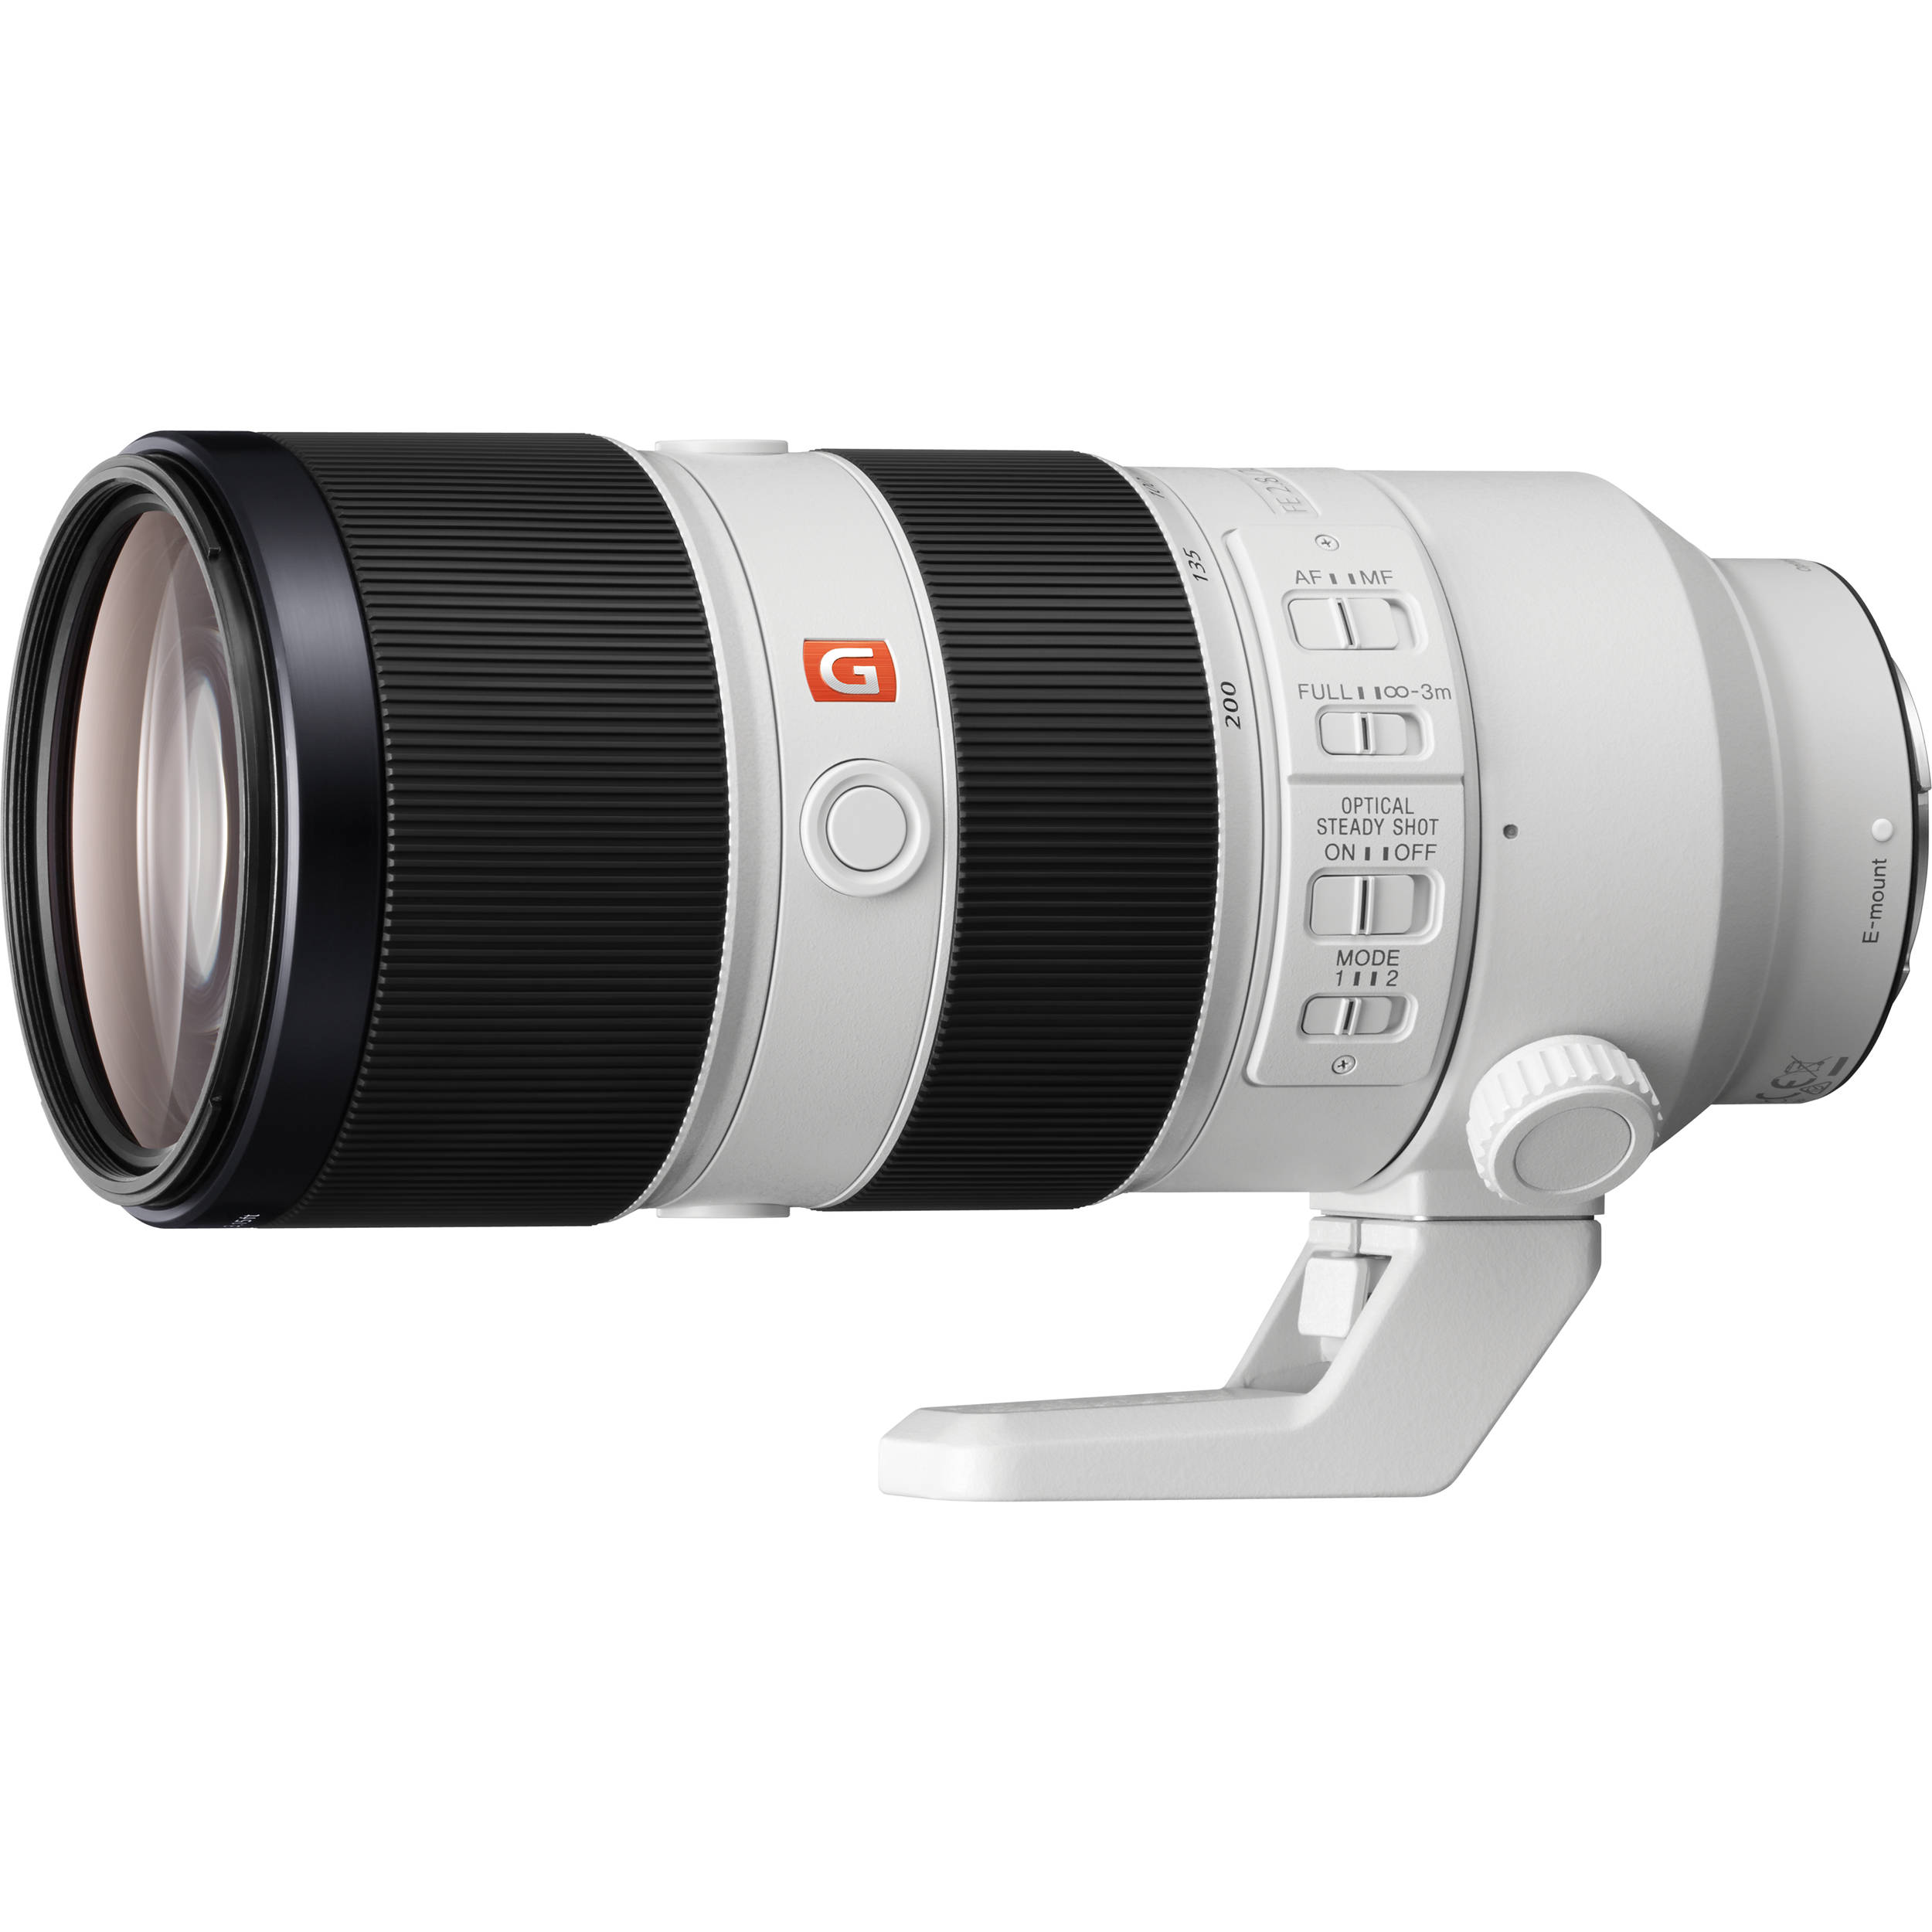 Sony Fe 70 0mm F 2 8 Gm Oss Lens Sel700gm B H Photo Video